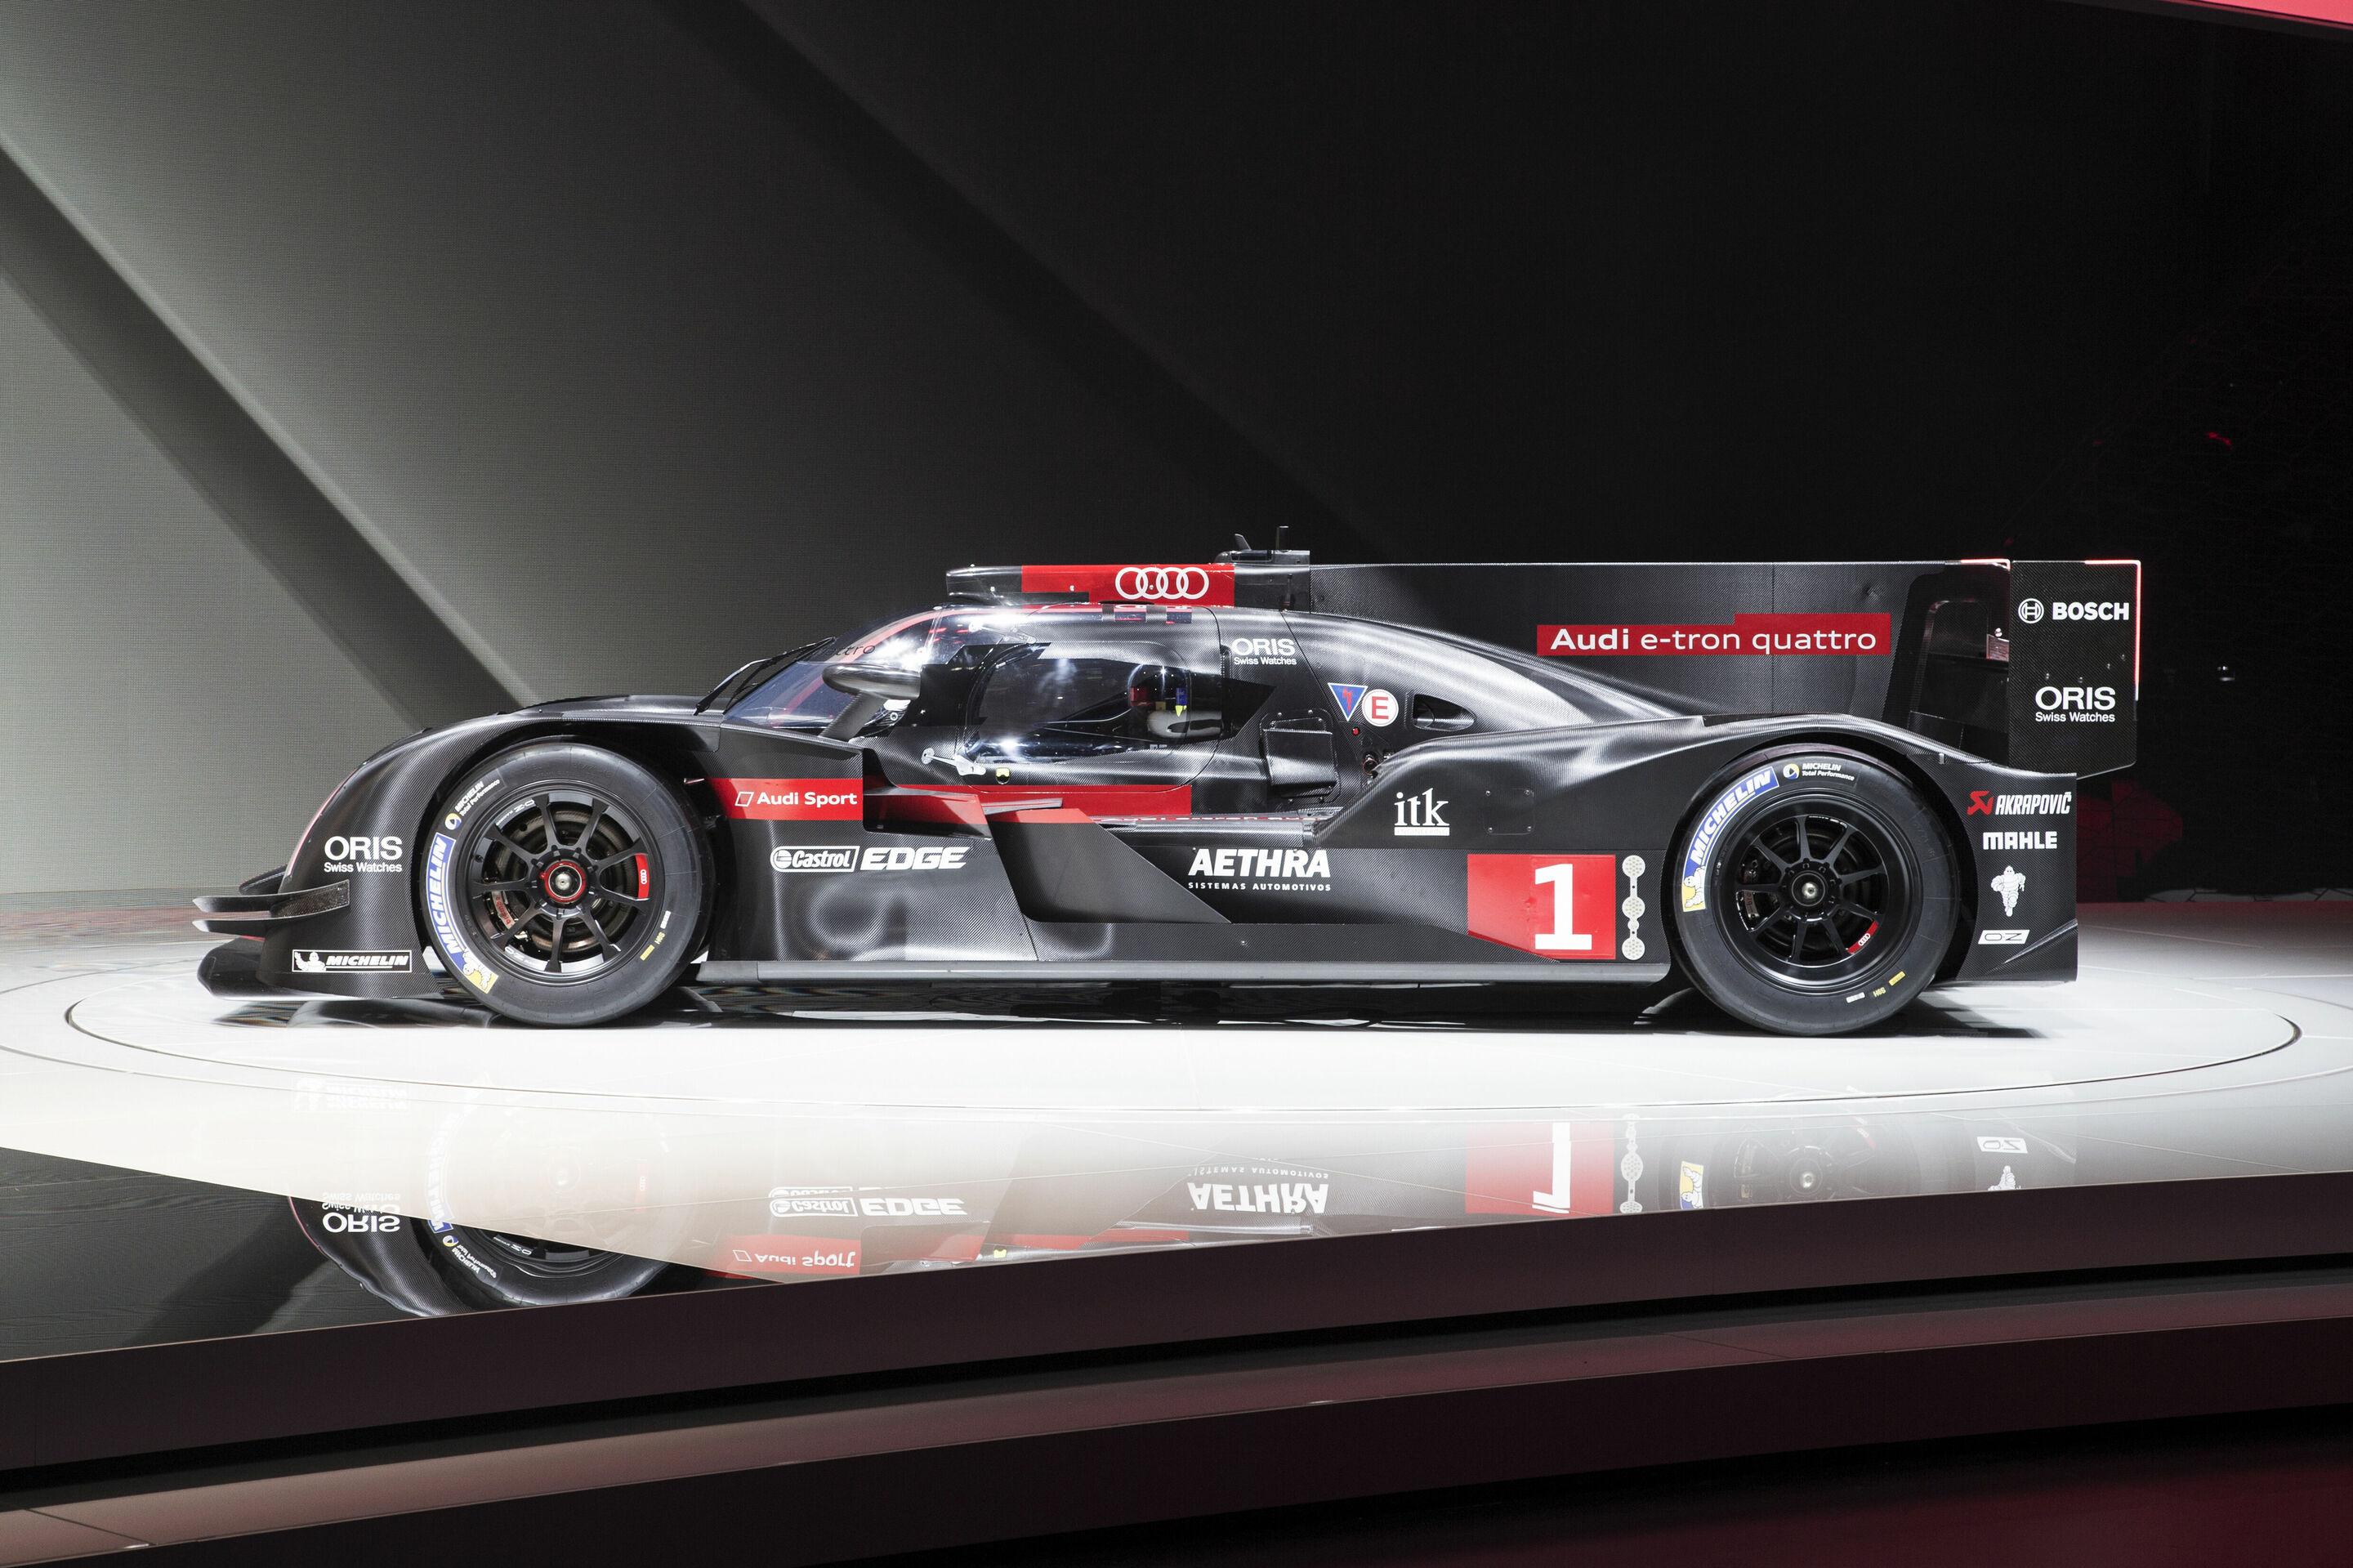 Audi Sport vertraut auch 2014 auf starke Partner in der FIA WEC